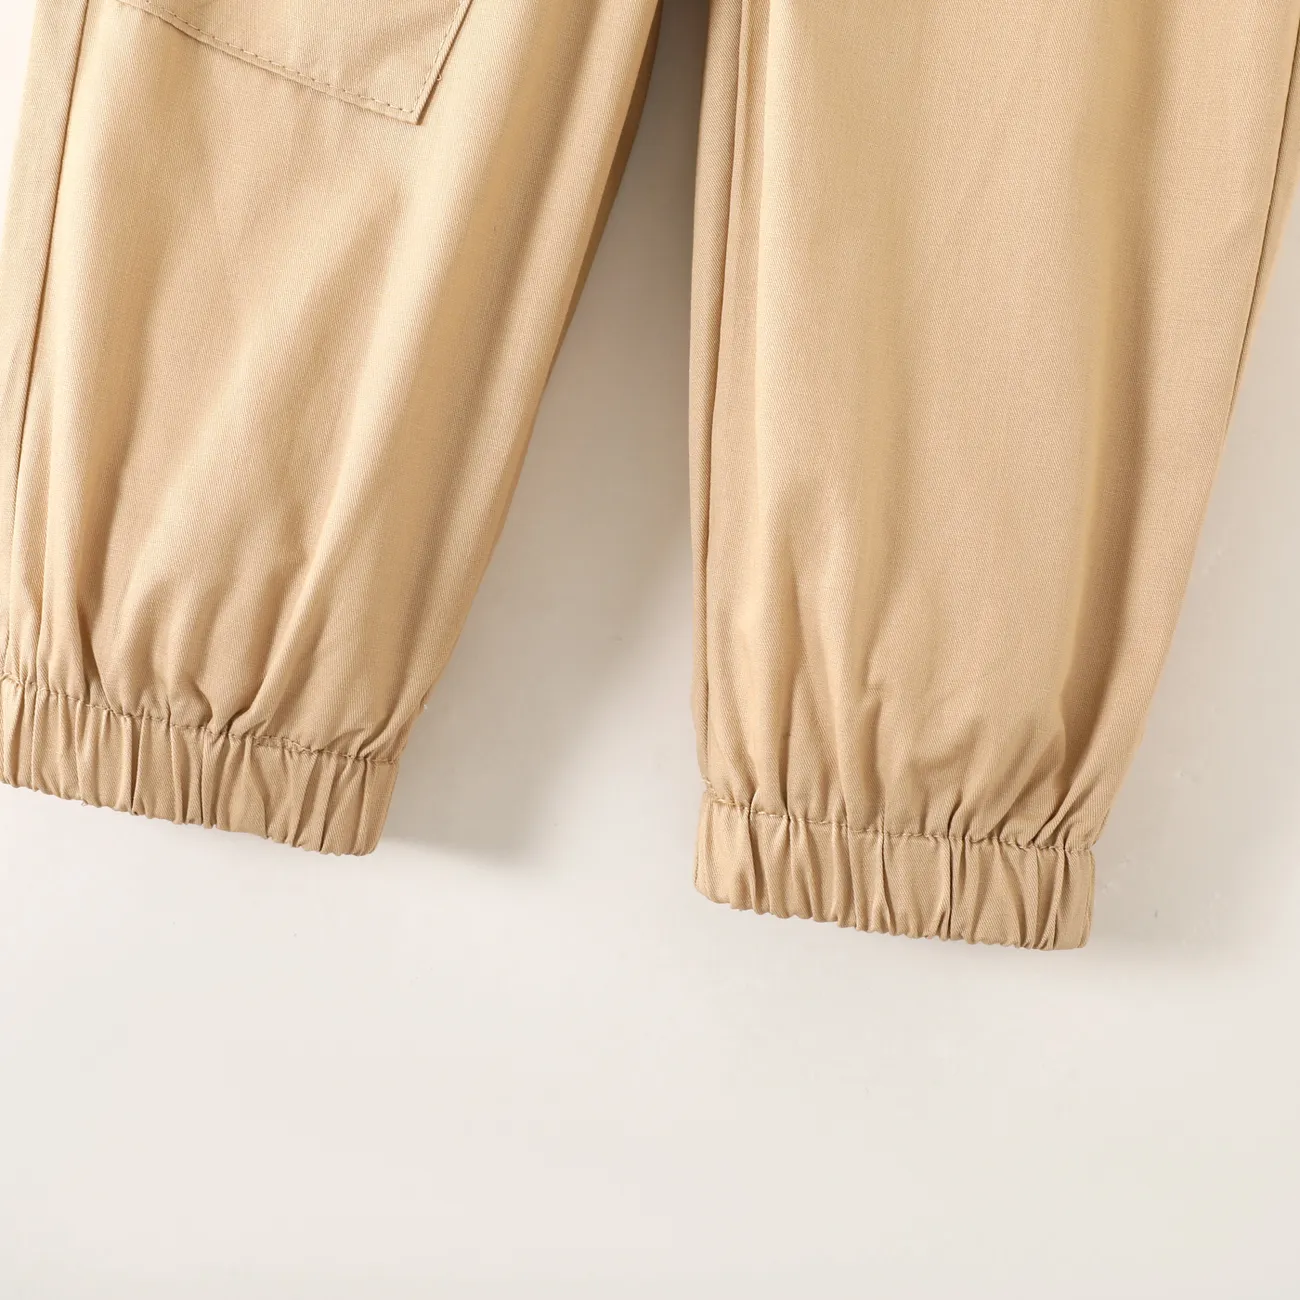 pantalones cargo de 100% algodón estilo trabajador para niños pequeños Albaricoque big image 1